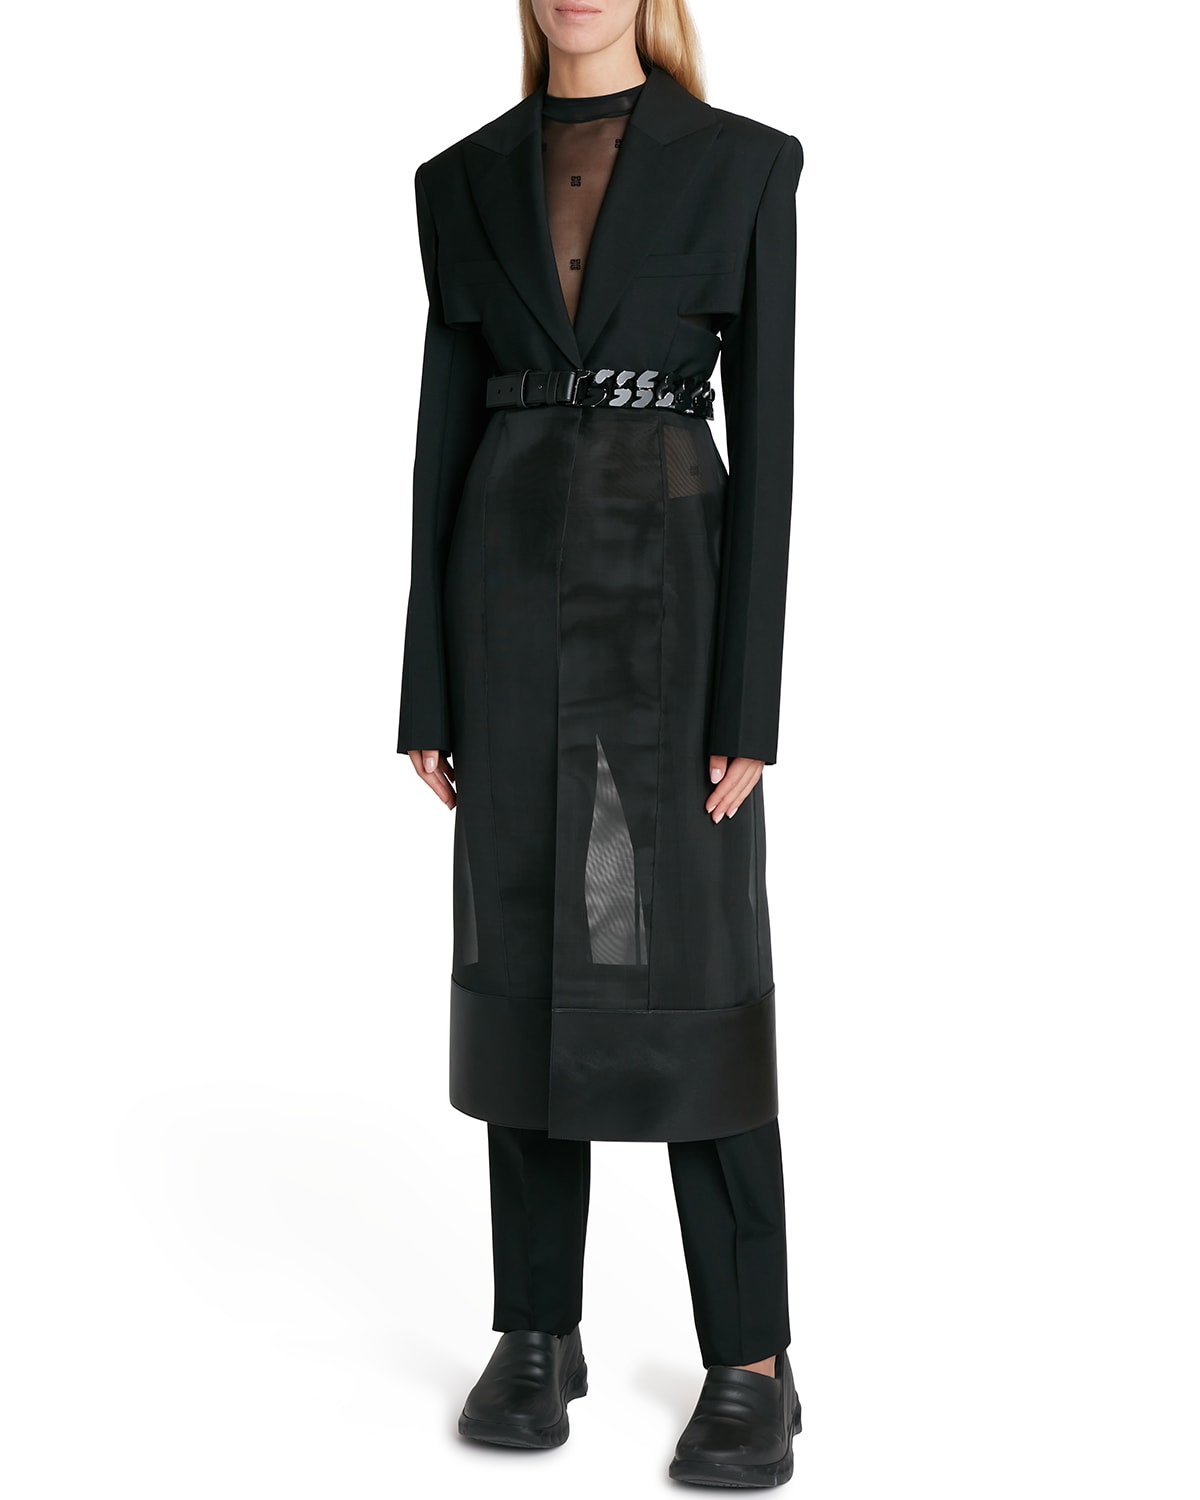 Givenchy Cutout Mesh Insert Long Coat